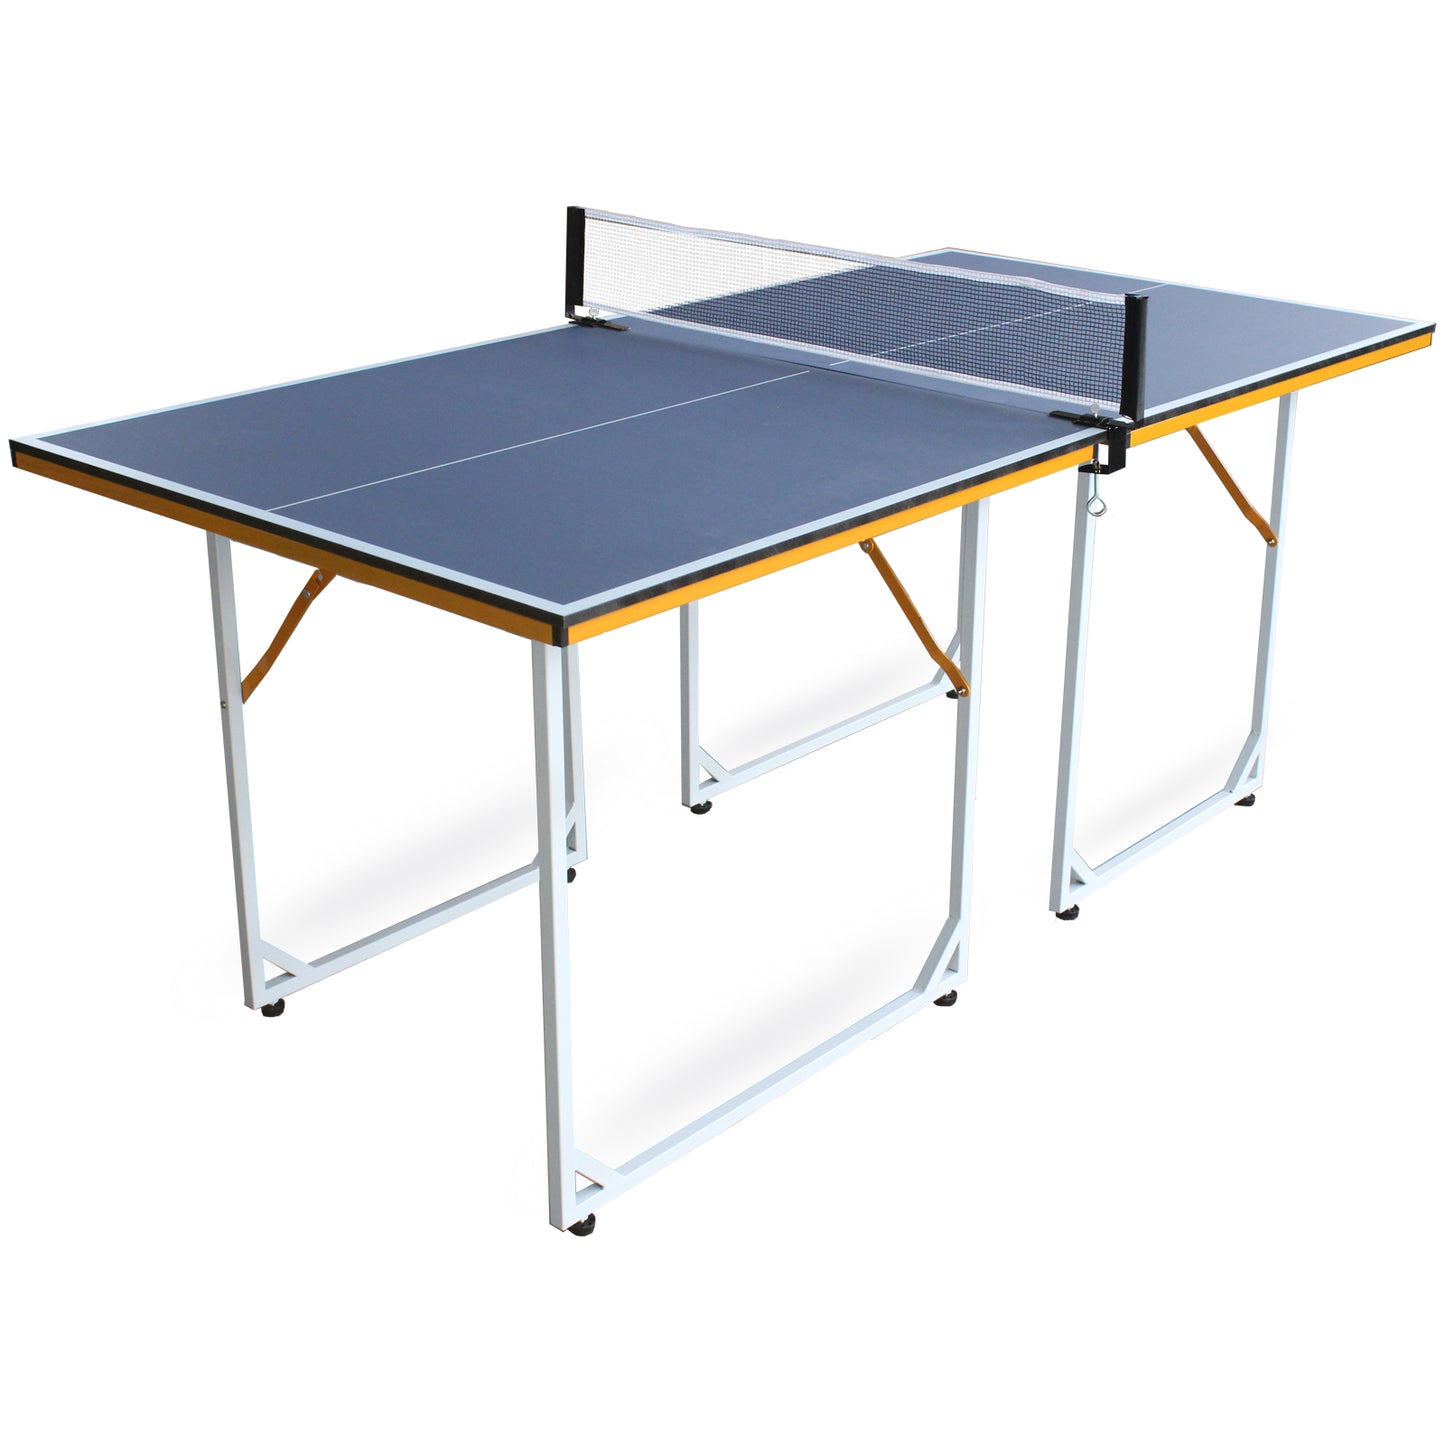 6フィート中型卓球テーブル 折りたたみ式&amp;ポータブル卓球台セット 屋内&amp;屋外ゲーム用 ネット付き、卓球パドル2個、ボール3個